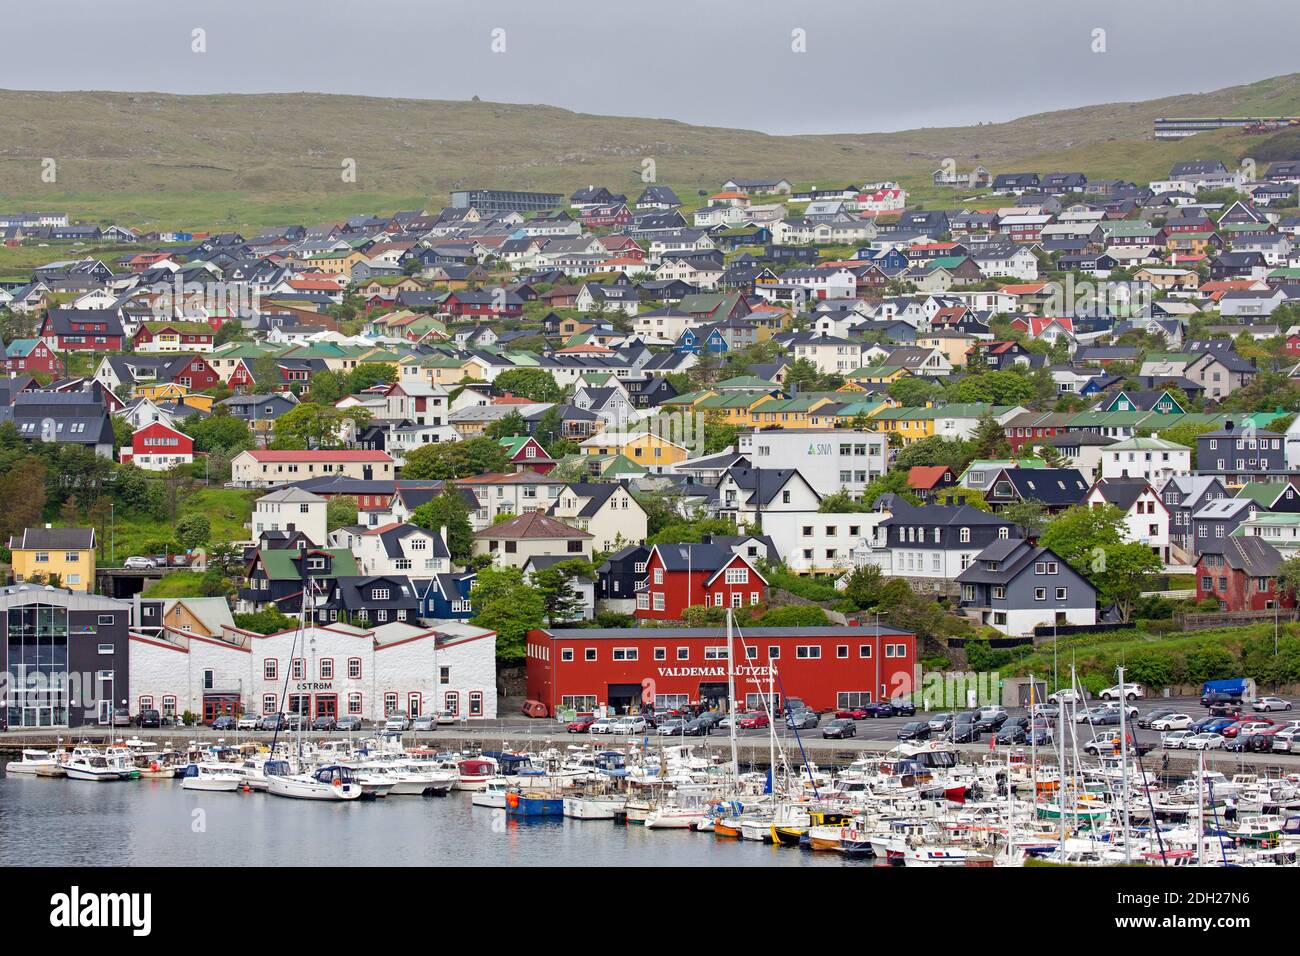 Vue sur le port / port de plaisance à Torshavn, la capitale et la plus grande ville des îles Féroé / îles Féroé sur l'île de Streymoy Banque D'Images